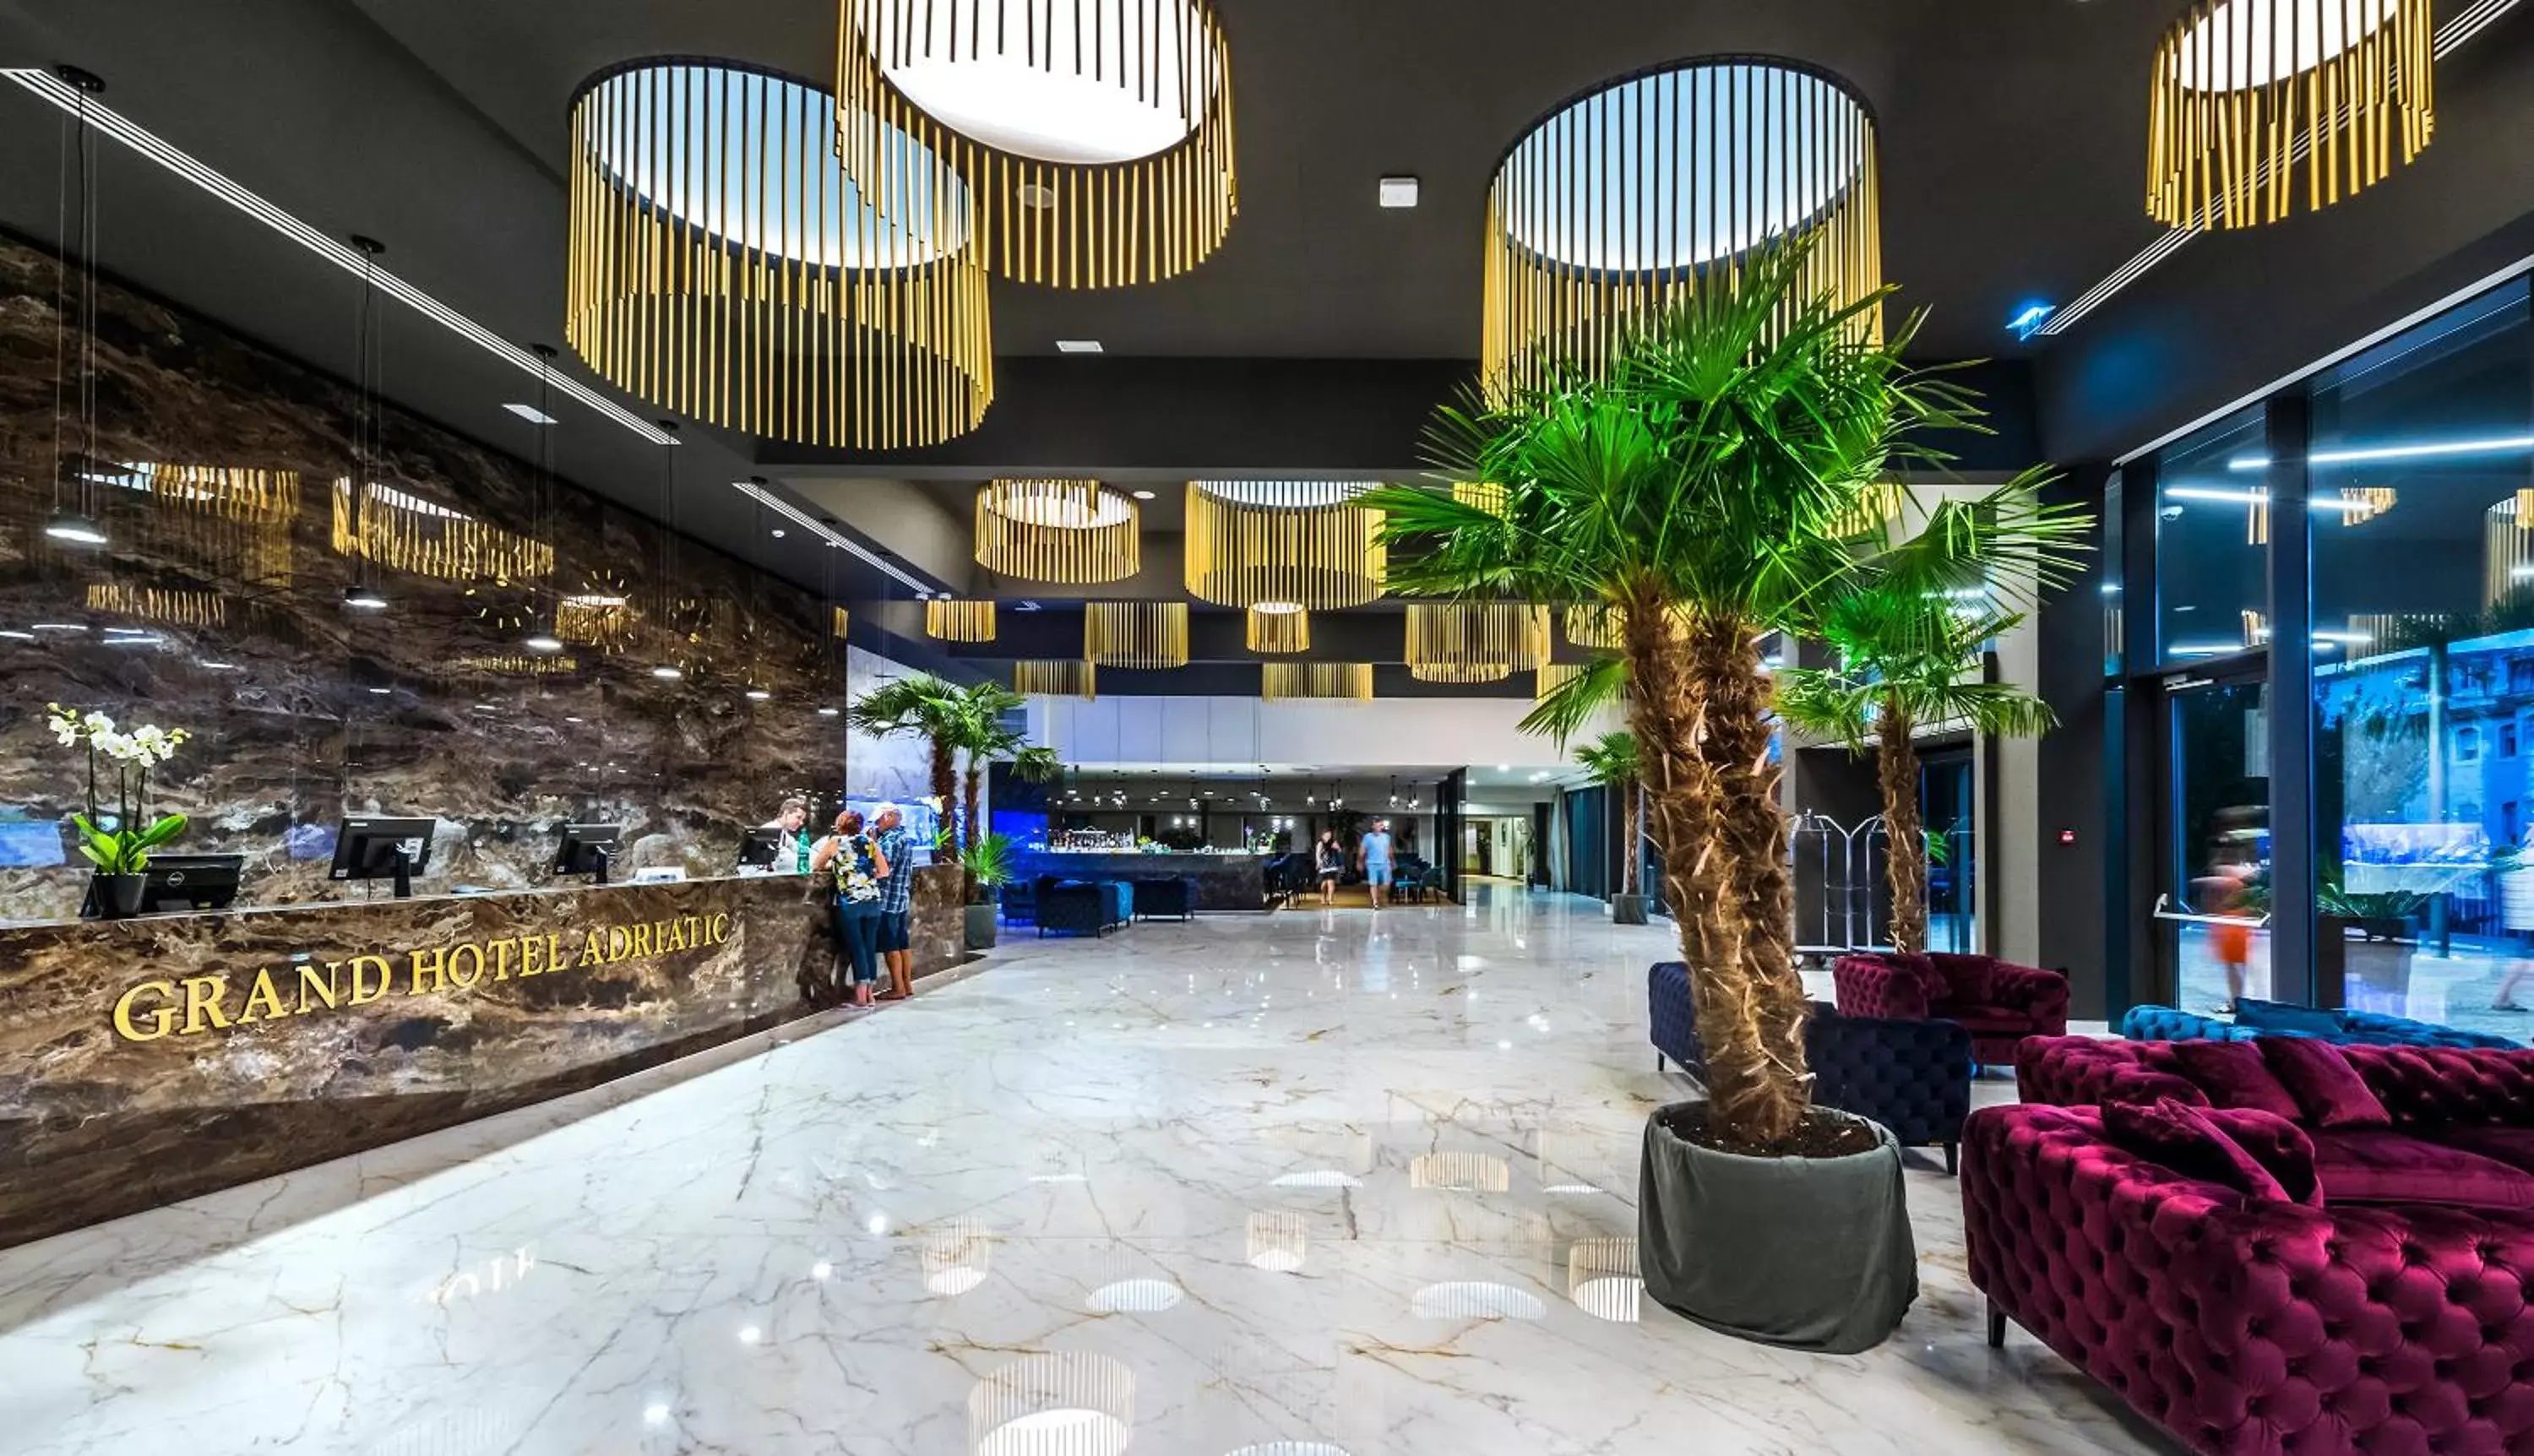 Lobby or reception, Lobby/Reception in Grand Hotel Adriatic